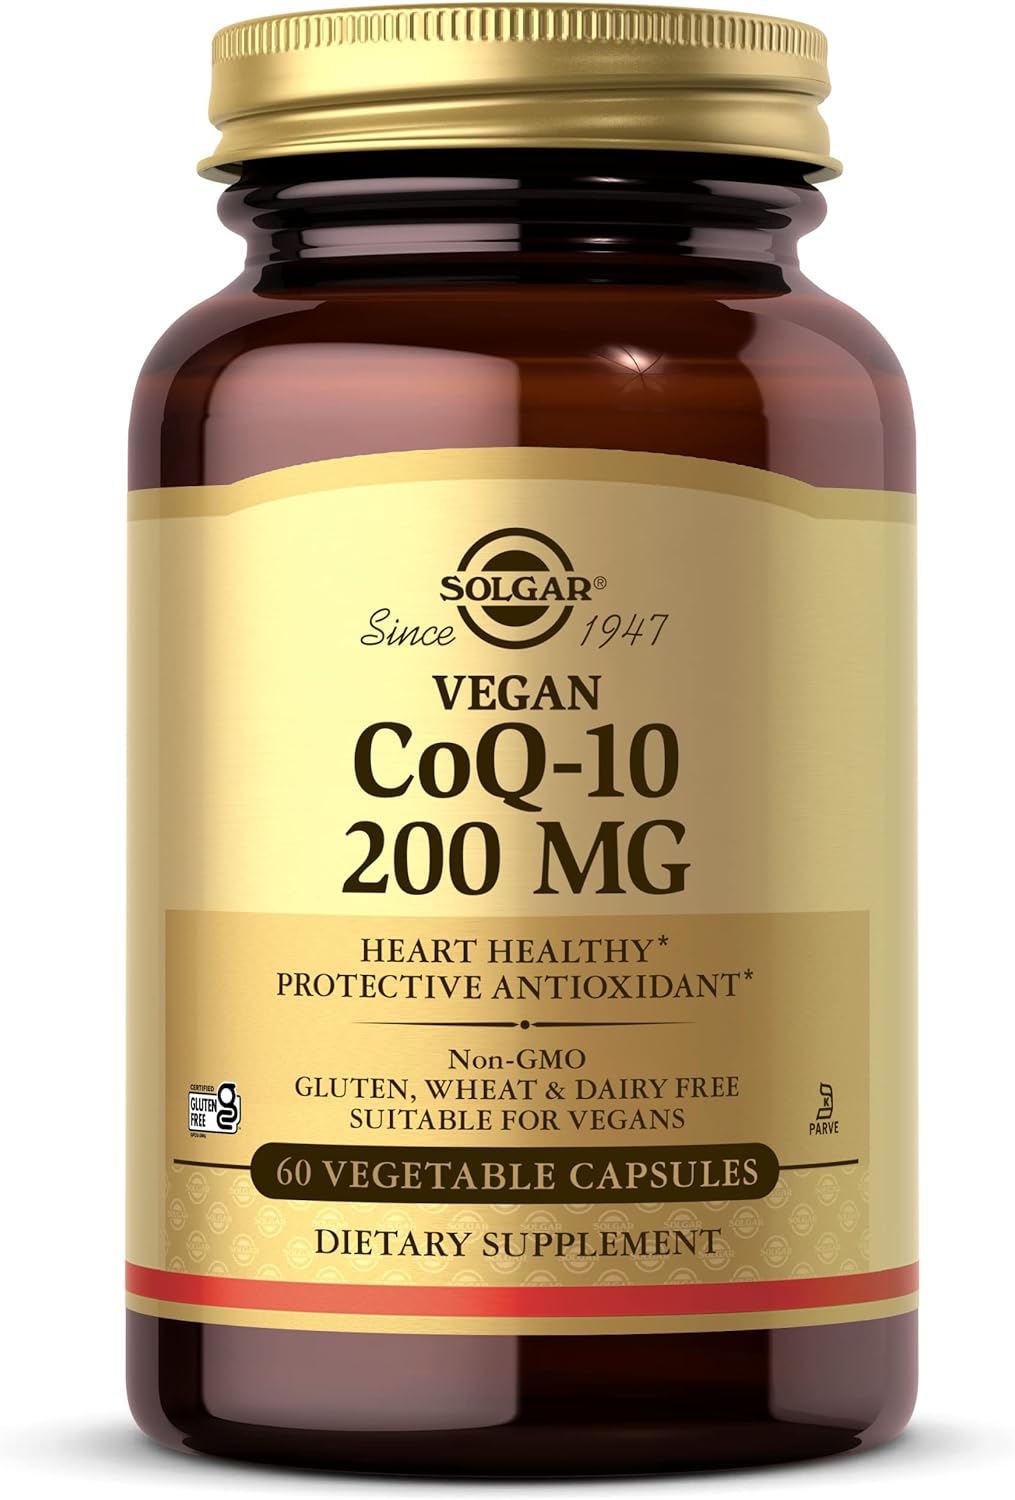 Solgar Vegetarian CoQ-10 200 mg, 60 Vegetable Capsules - Heart Healthy